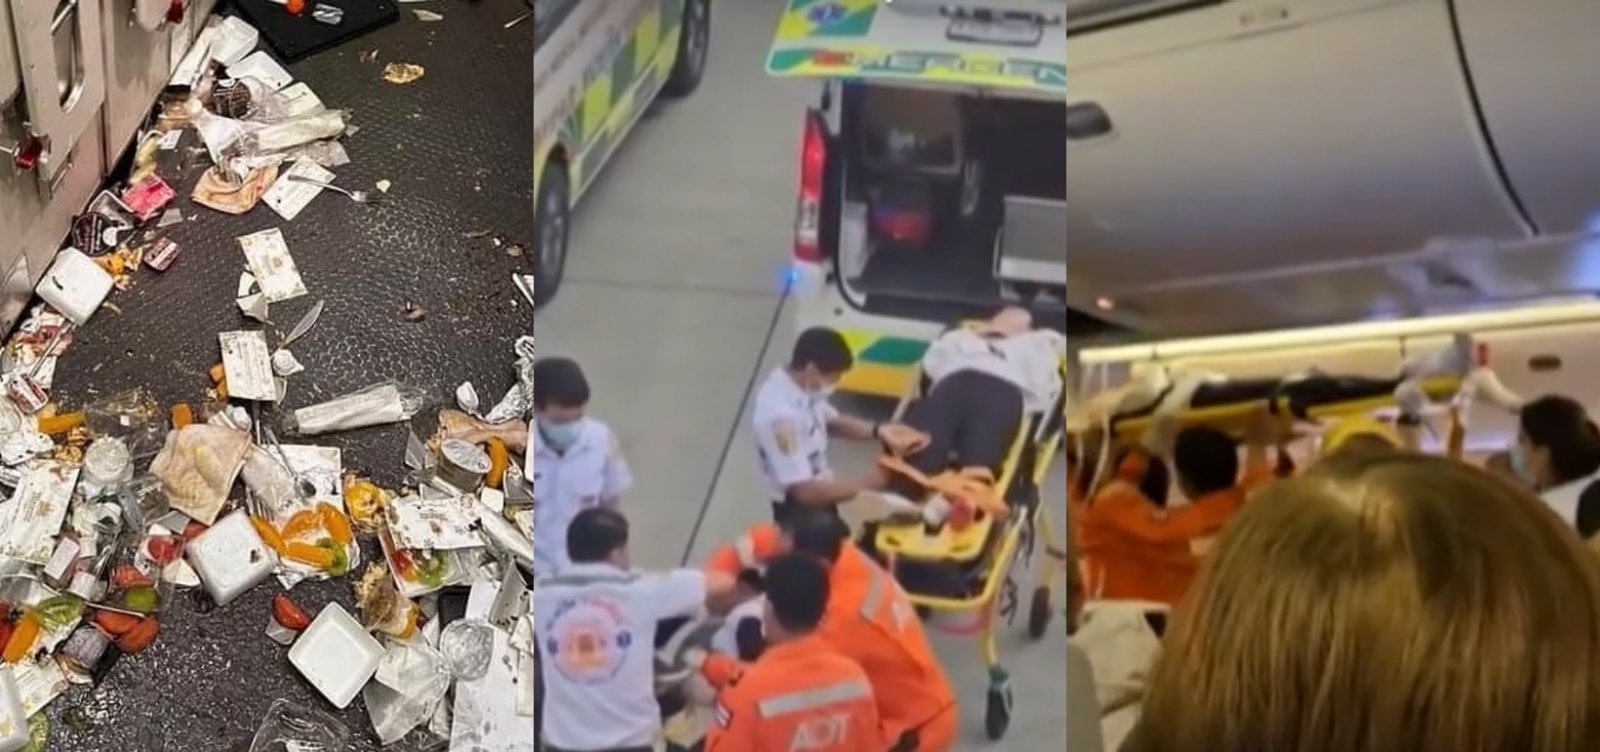 Singapore Airlines oferece indenização a feridos em turbulência que deixou uma pessoa morta